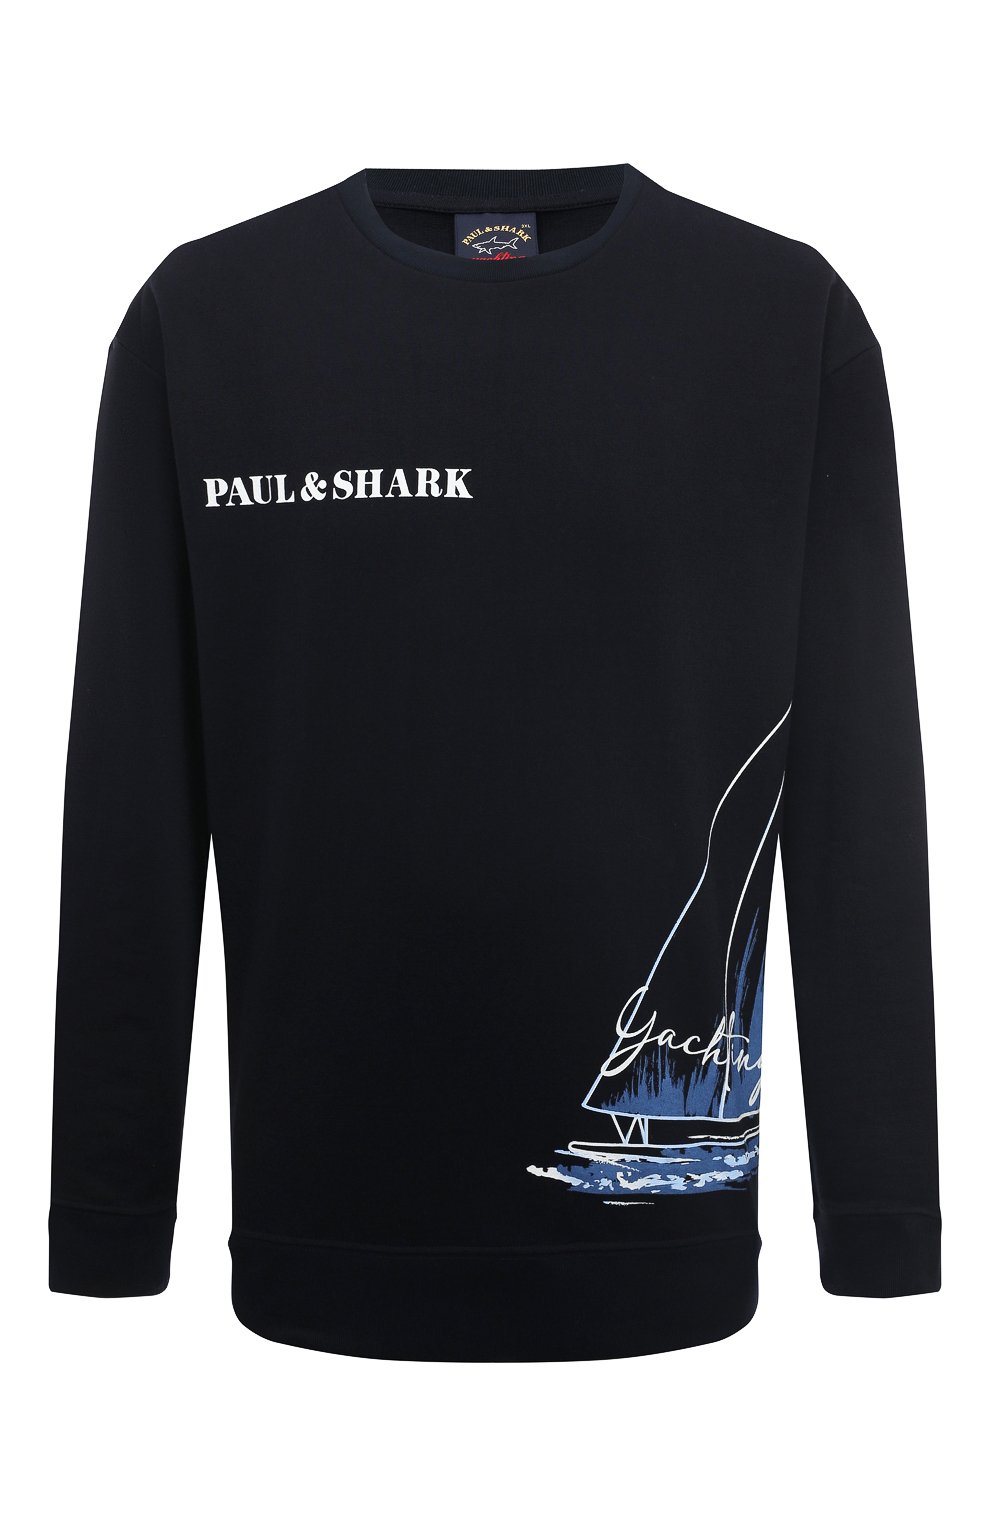 Свитшоты Paul&Shark, Хлопковый свитшот Paul&Shark, Италия, Синий, Хлопок: 100%;, 13332974  - купить